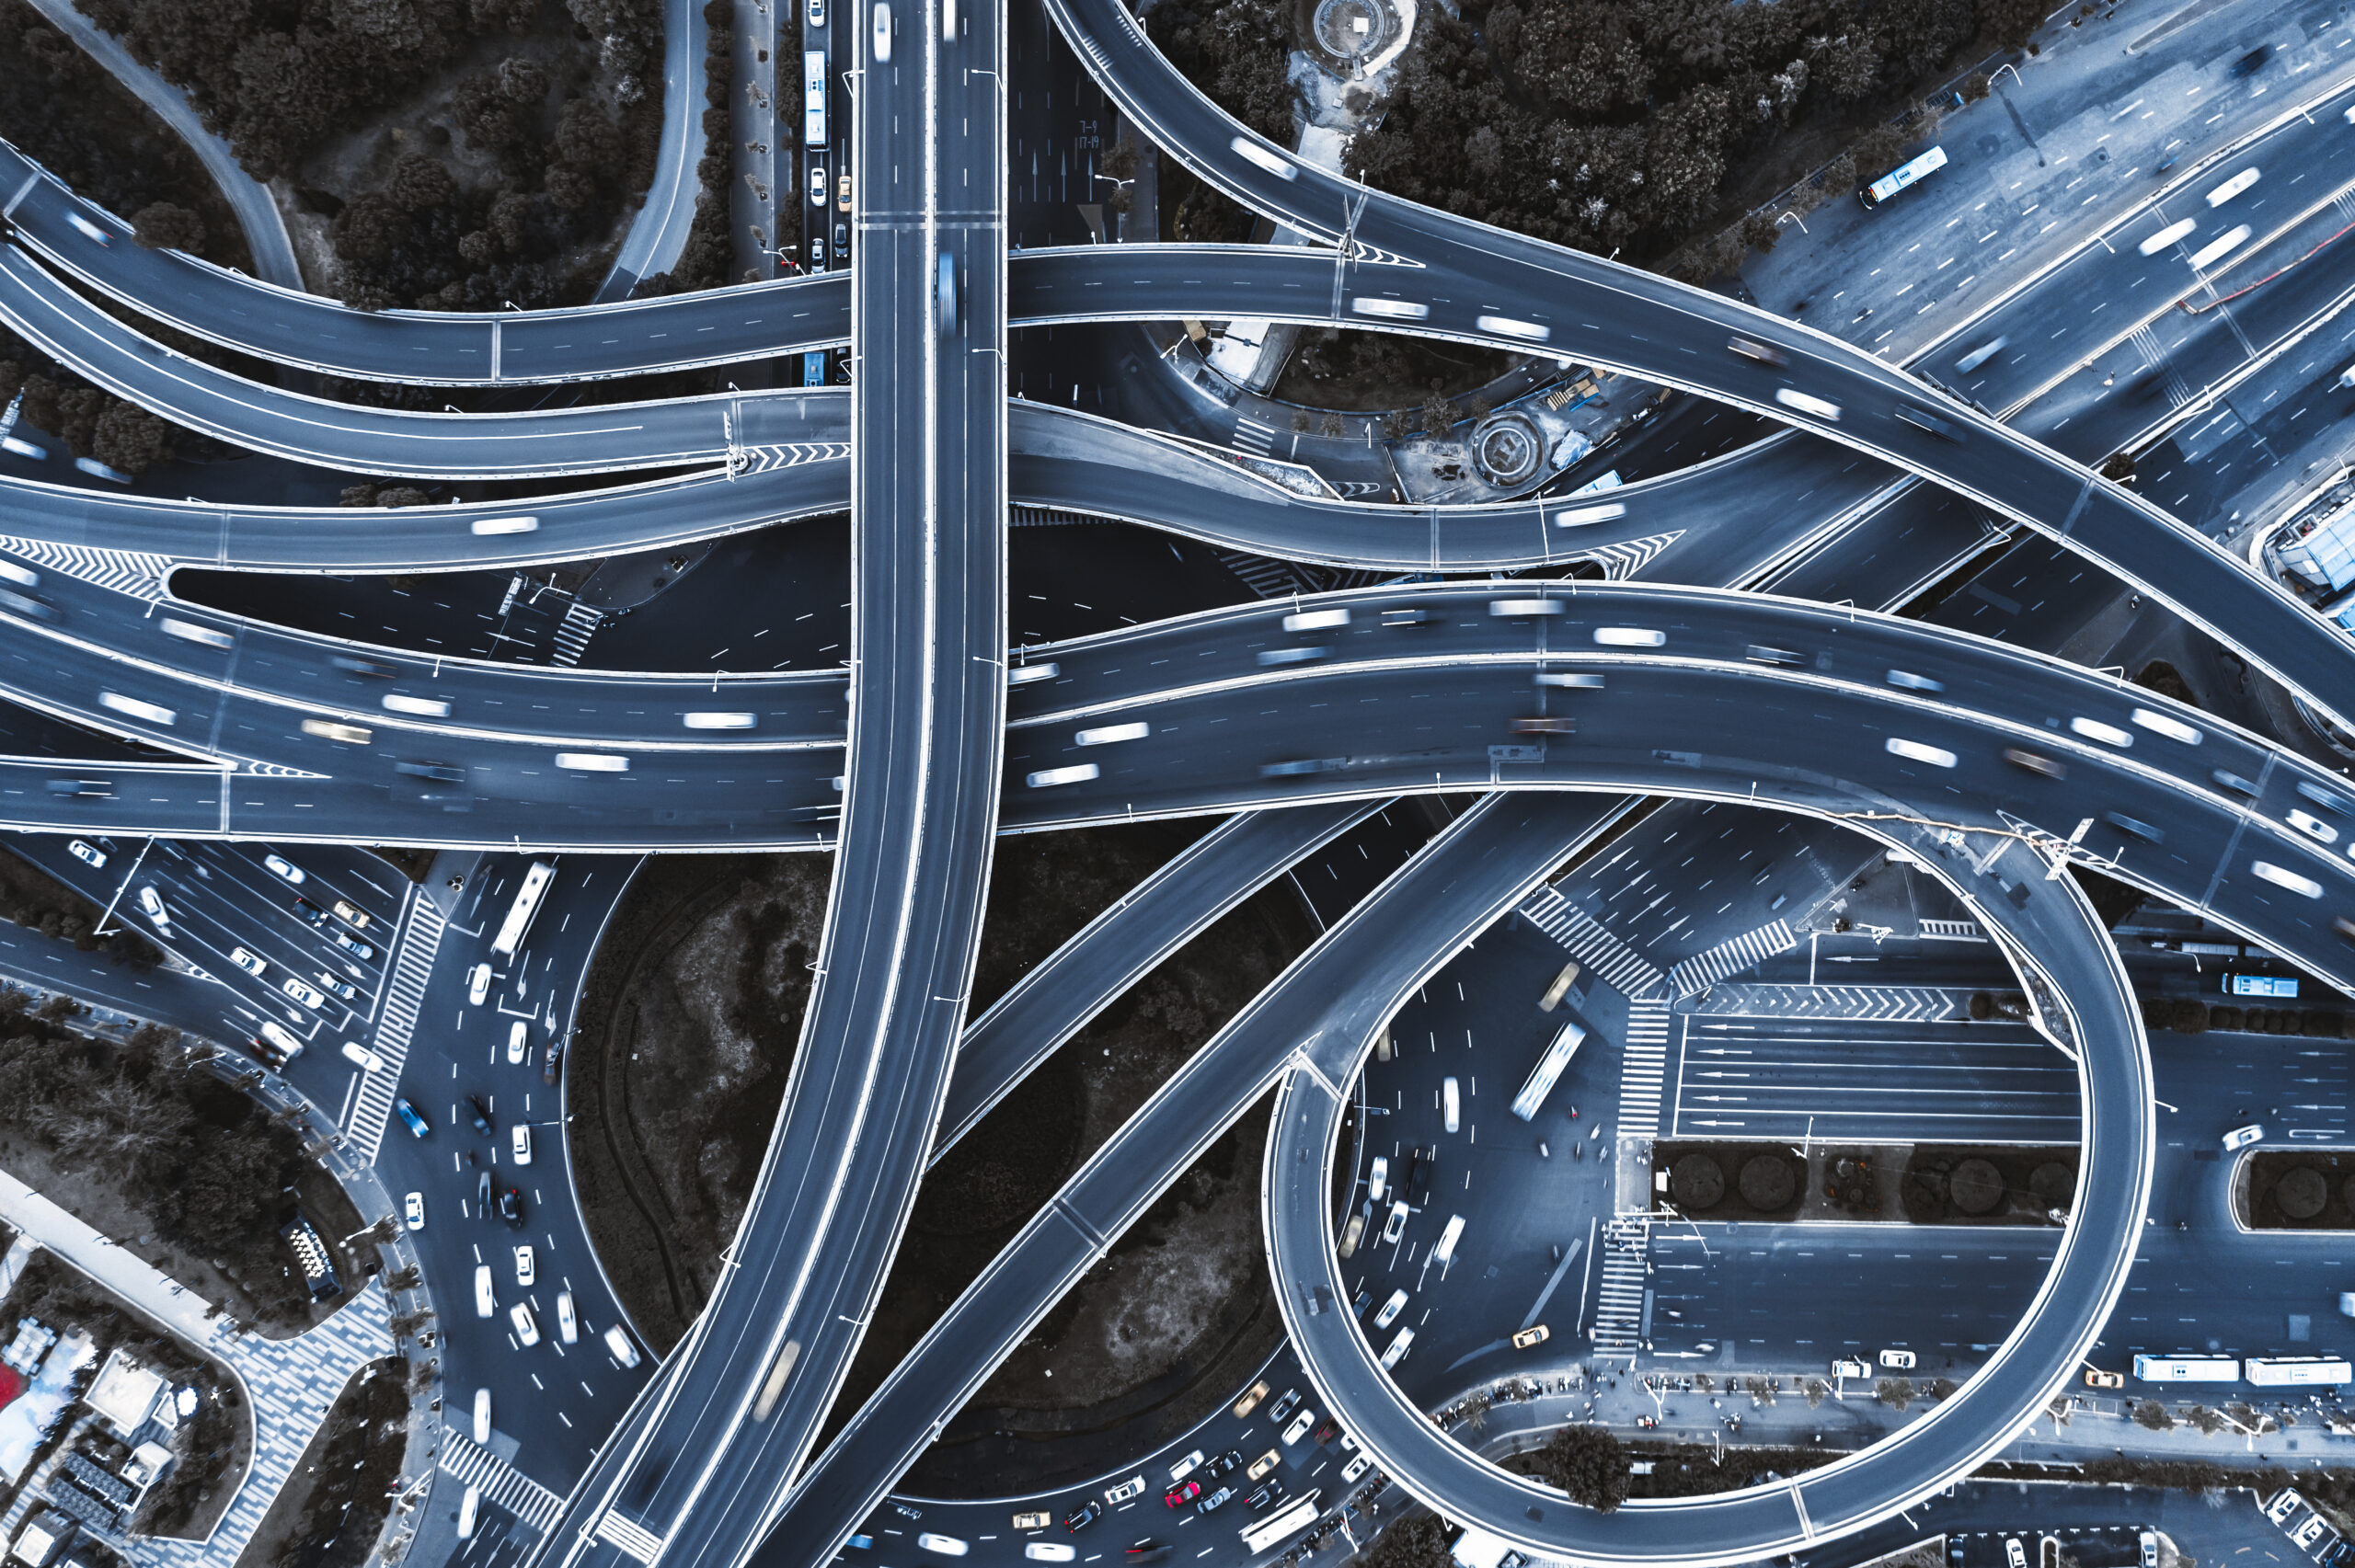 Birdeye picture of highway interchange